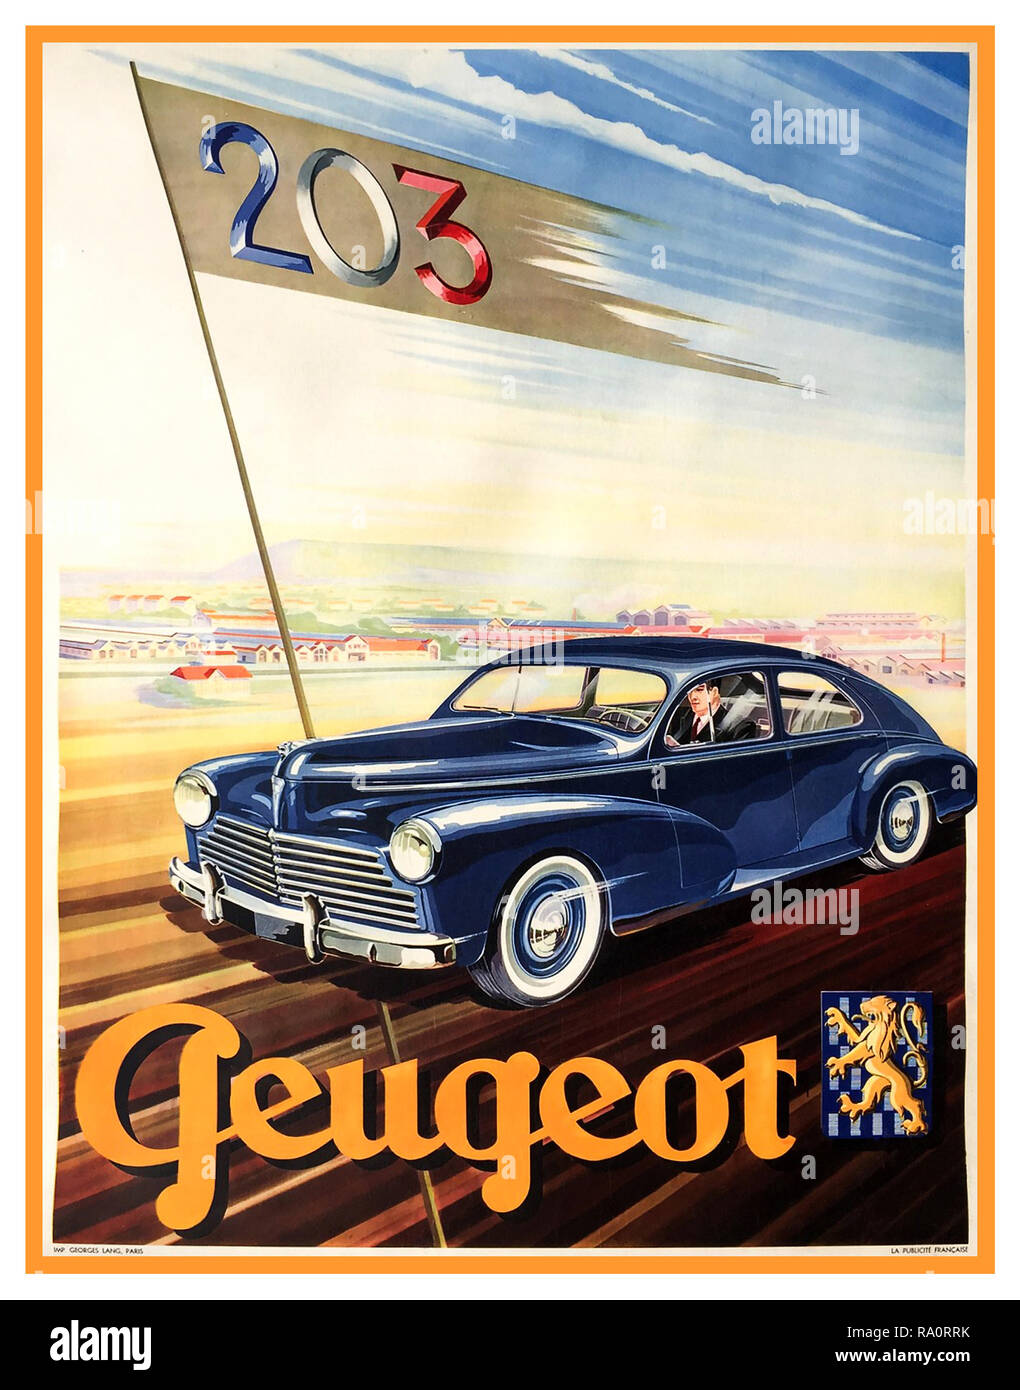 PEUGEOT 203 der Jahrgang 1950 französische Automobil Auto Poster. Peugeot 203 1955 Grafiker Georges Lang, Paris Frankreich Stockfoto